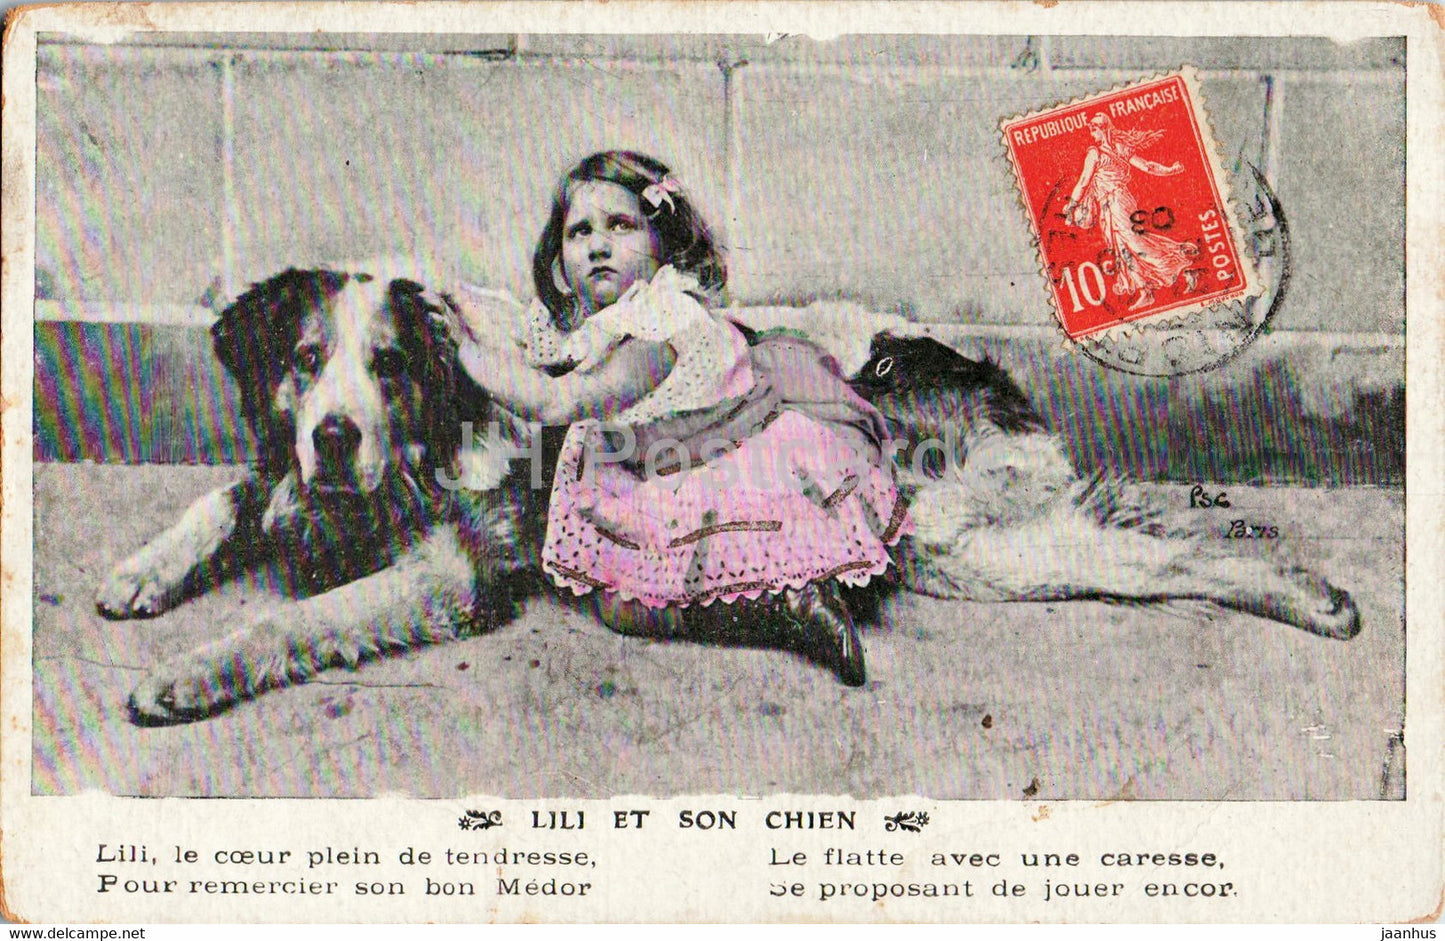 Lili et son Chien - dog - animal - old postcard - 1908 - France - used - JH Postcards